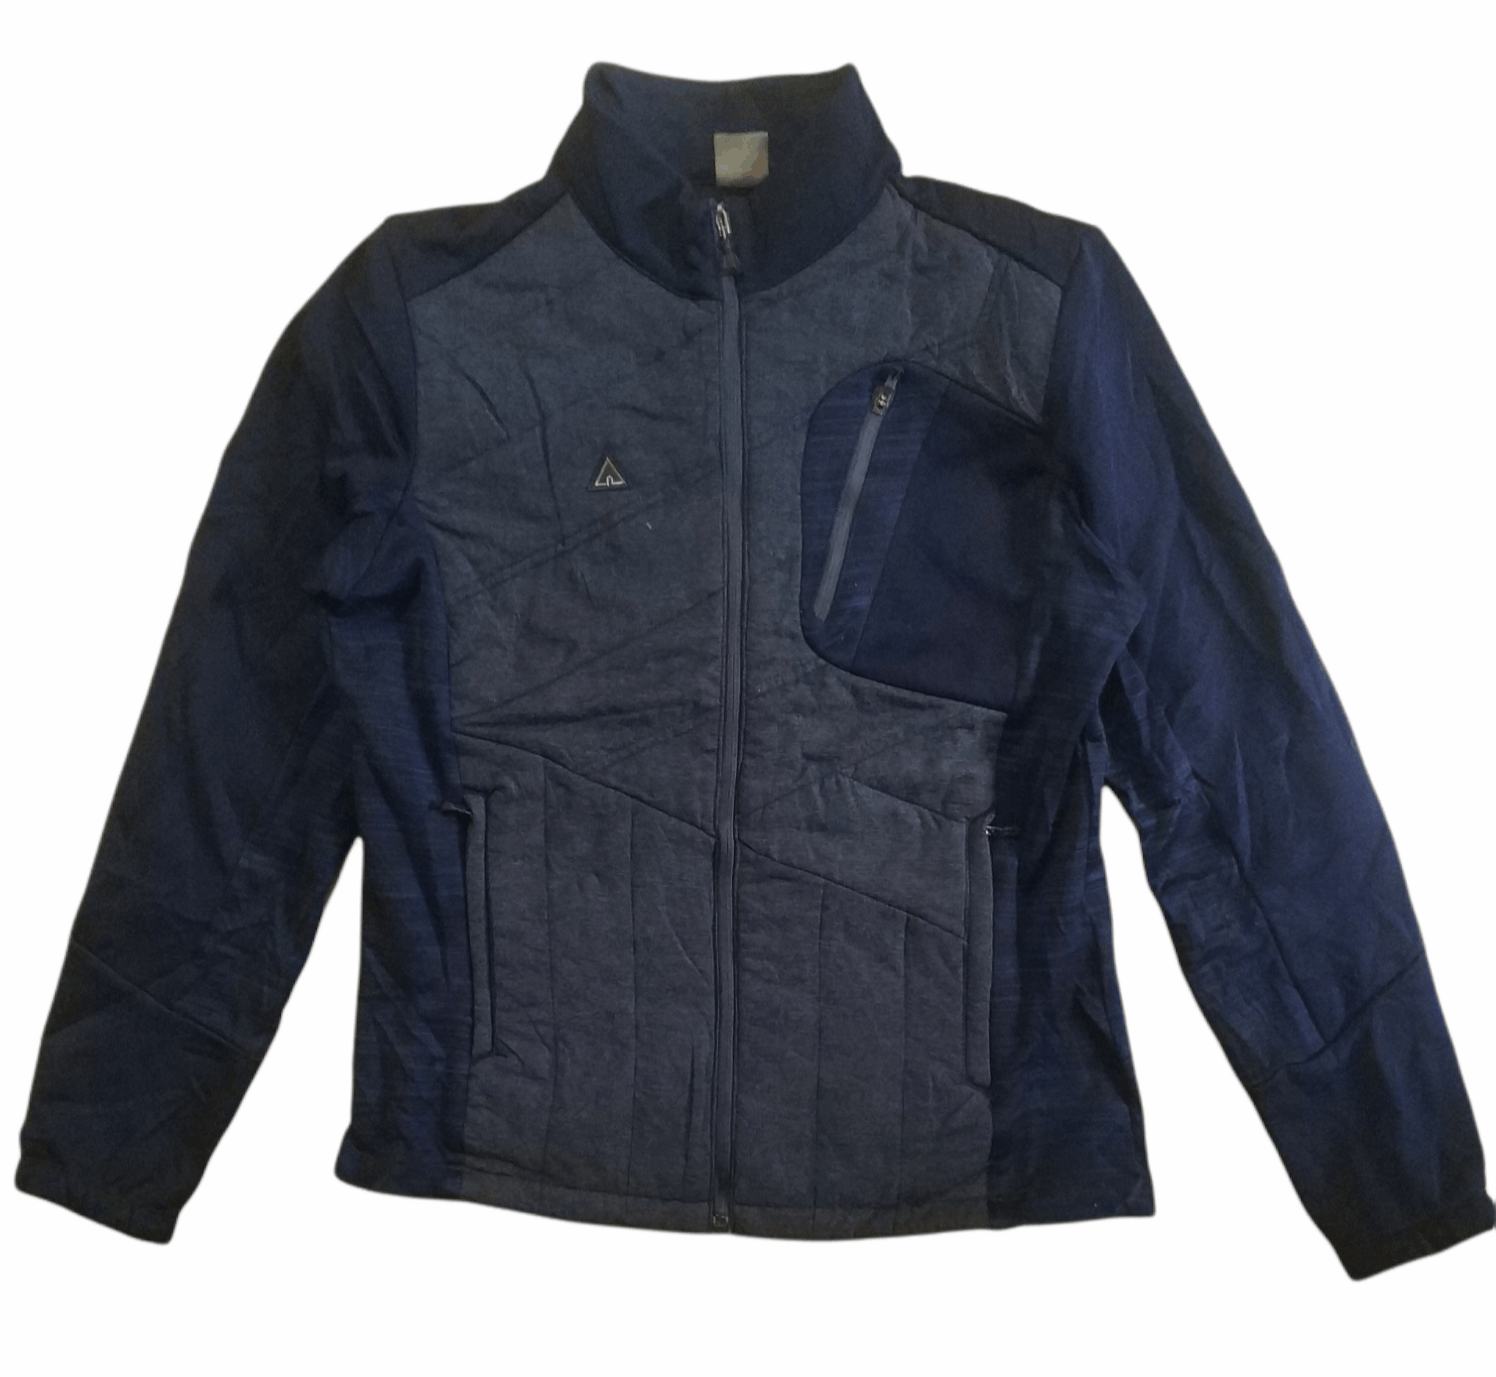 Pre-owned Airwalk Zipper Jacket In Dark Blue